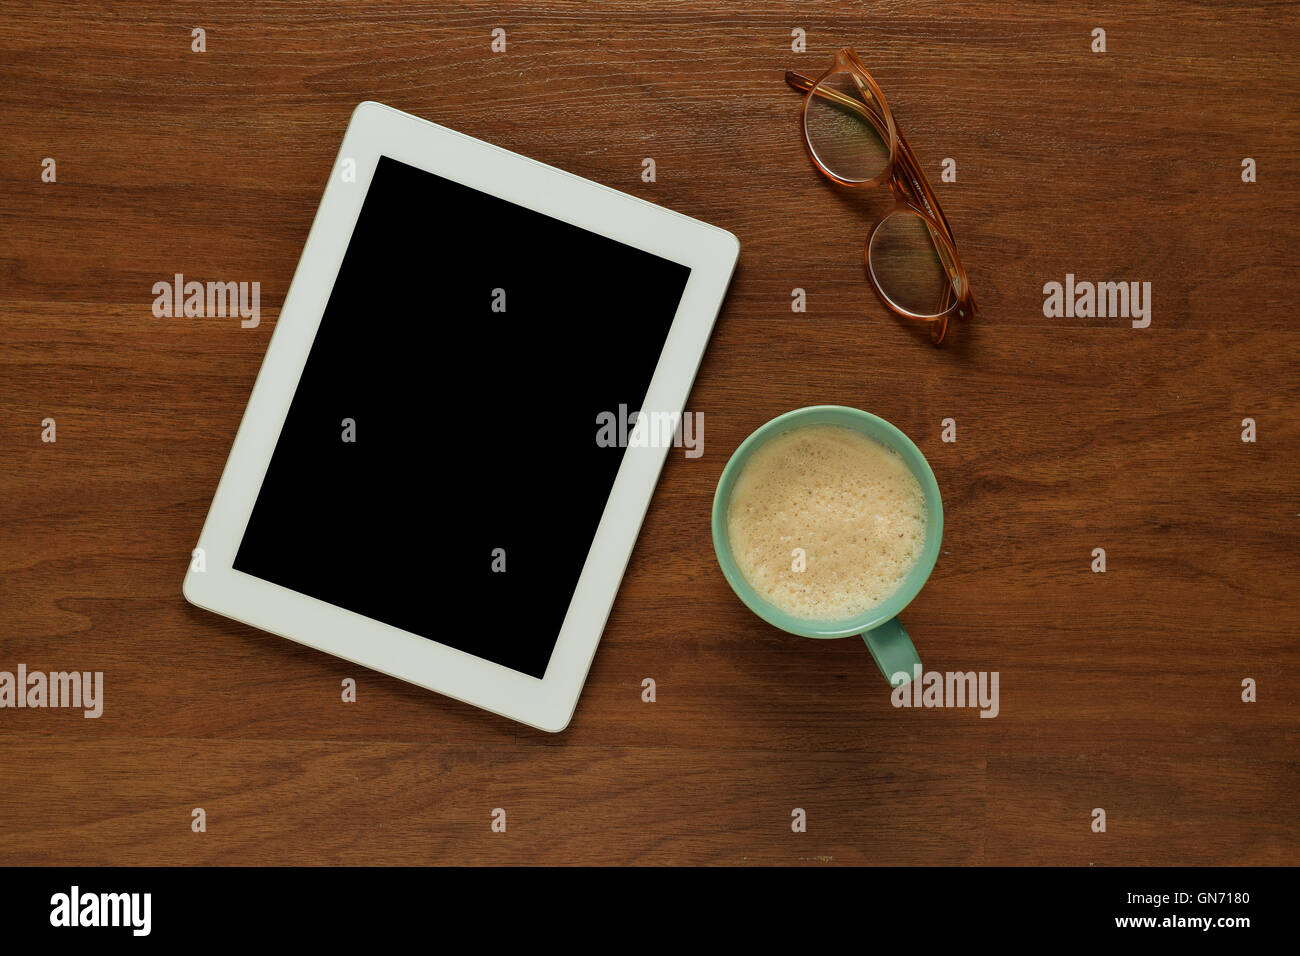 Draufsicht der Tablet-Computer, Gläser und eine Tasse Kaffee auf einem hölzernen Tisch mit Exemplar. Home Office und Lifestyle Konzept. Stockfoto